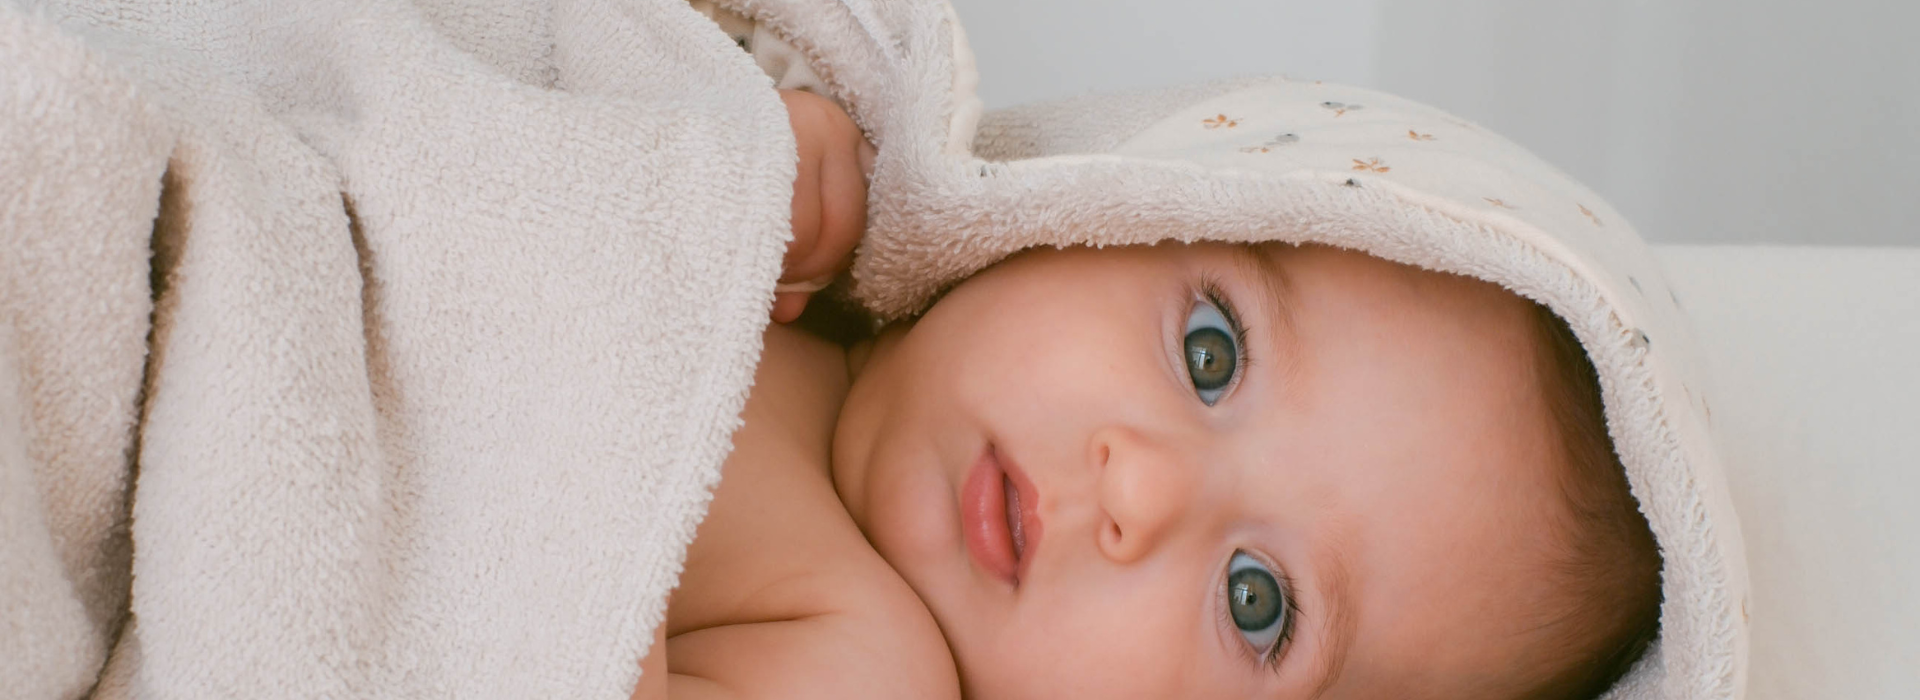 Cómo bañar al recién nacido: Consejos prácticos.